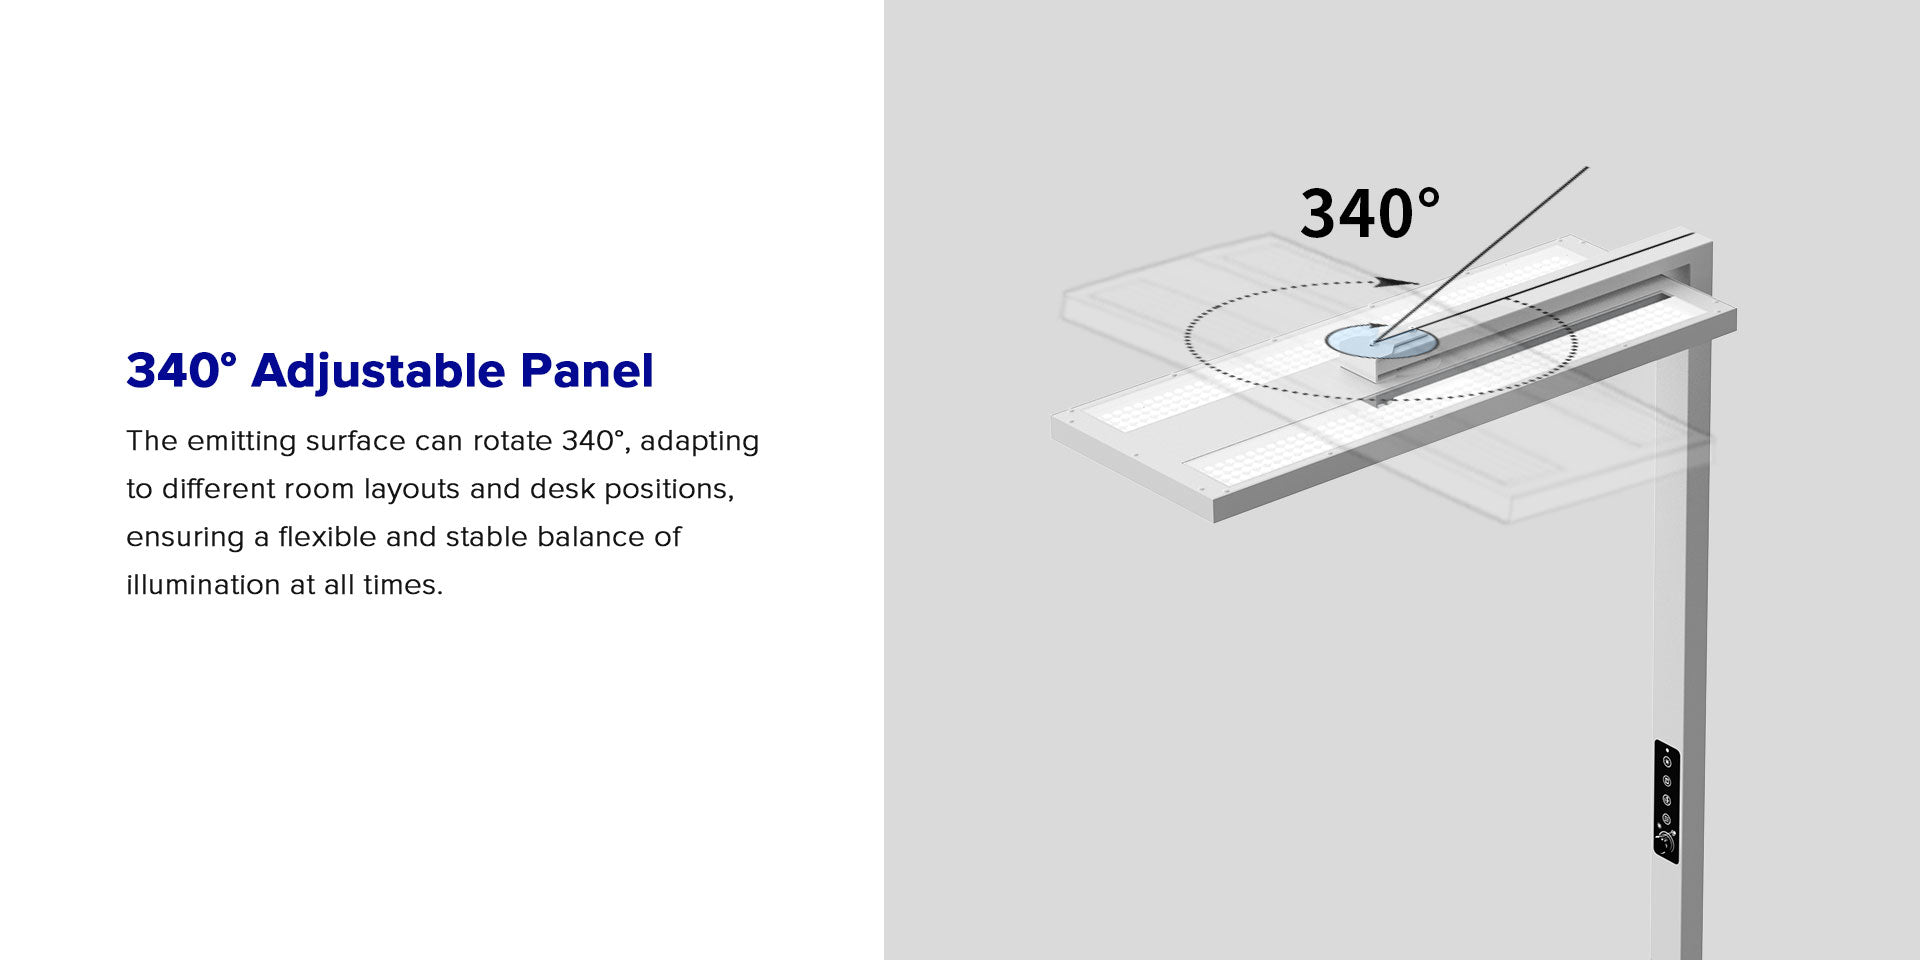 Vertical Led Desk Lamp has 340° adjustable panel